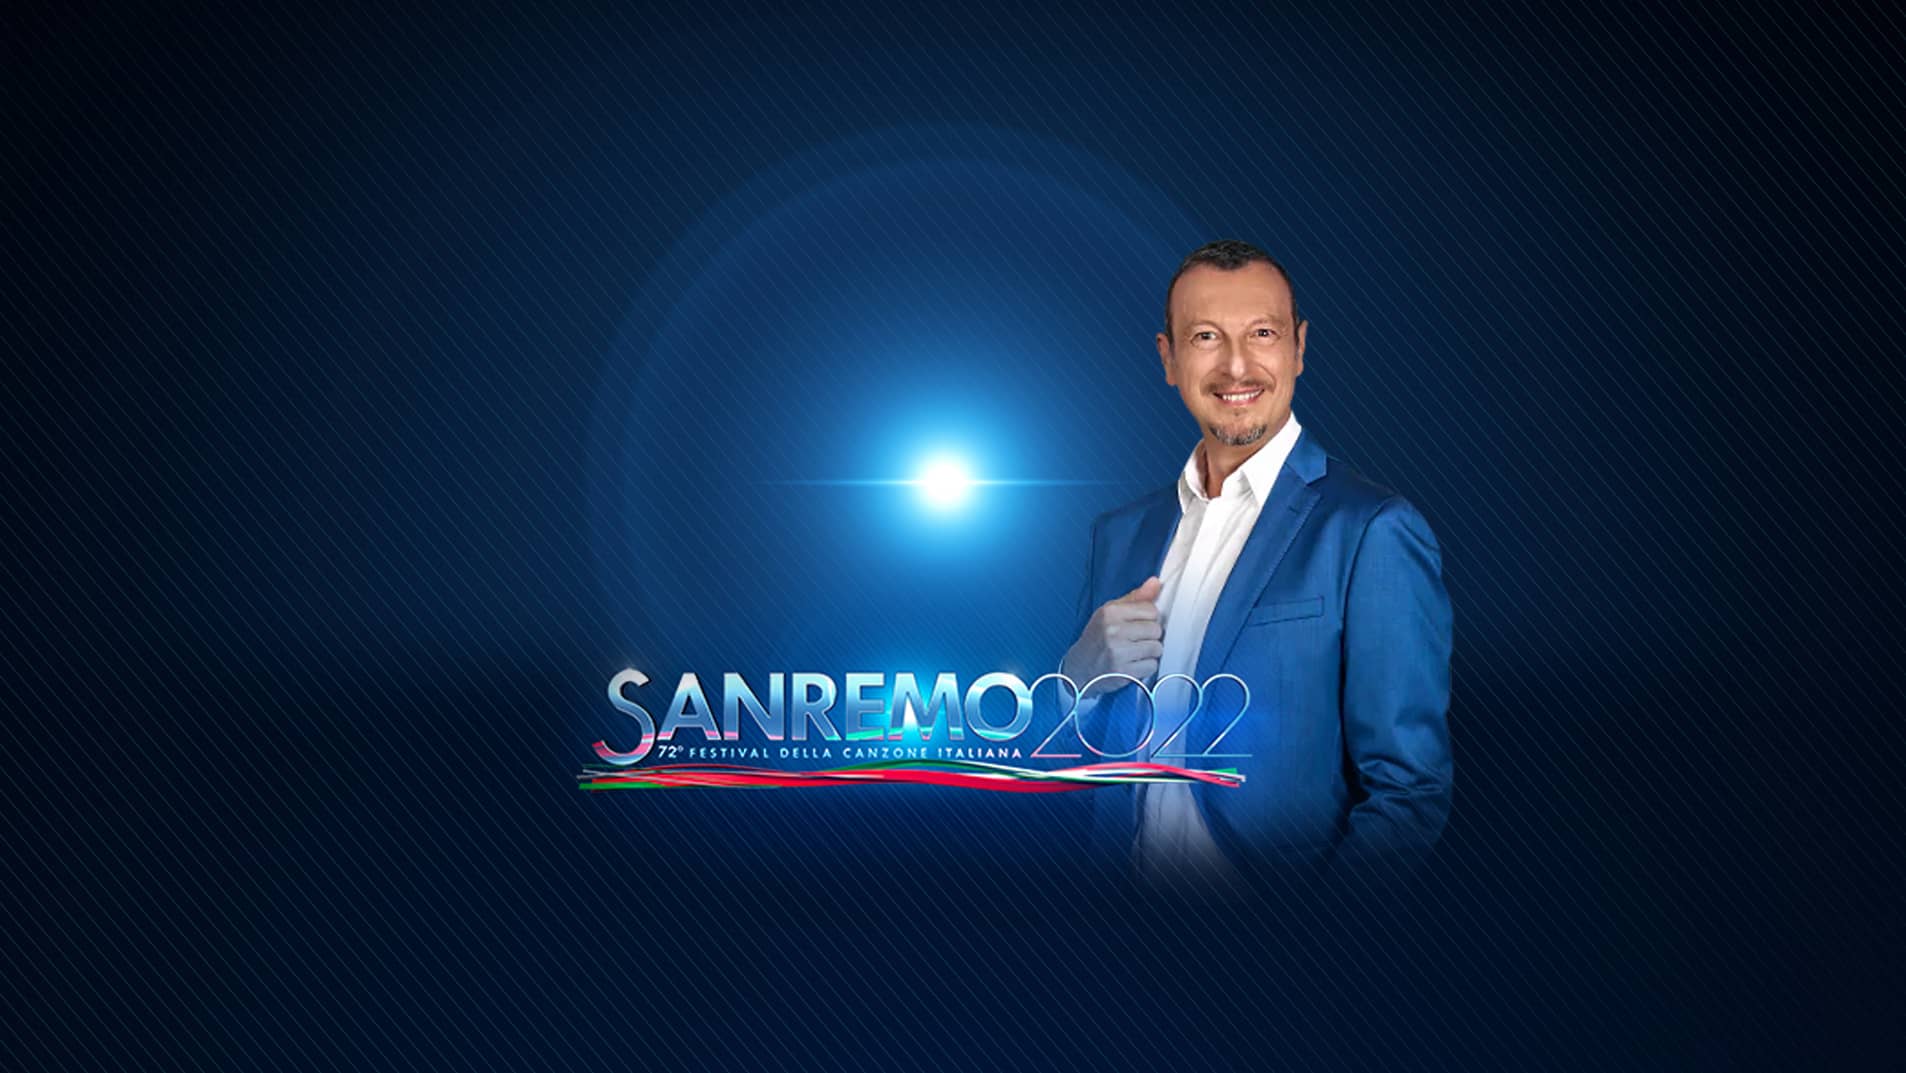 Al via la 72esima edizione del Festival di Sanremo